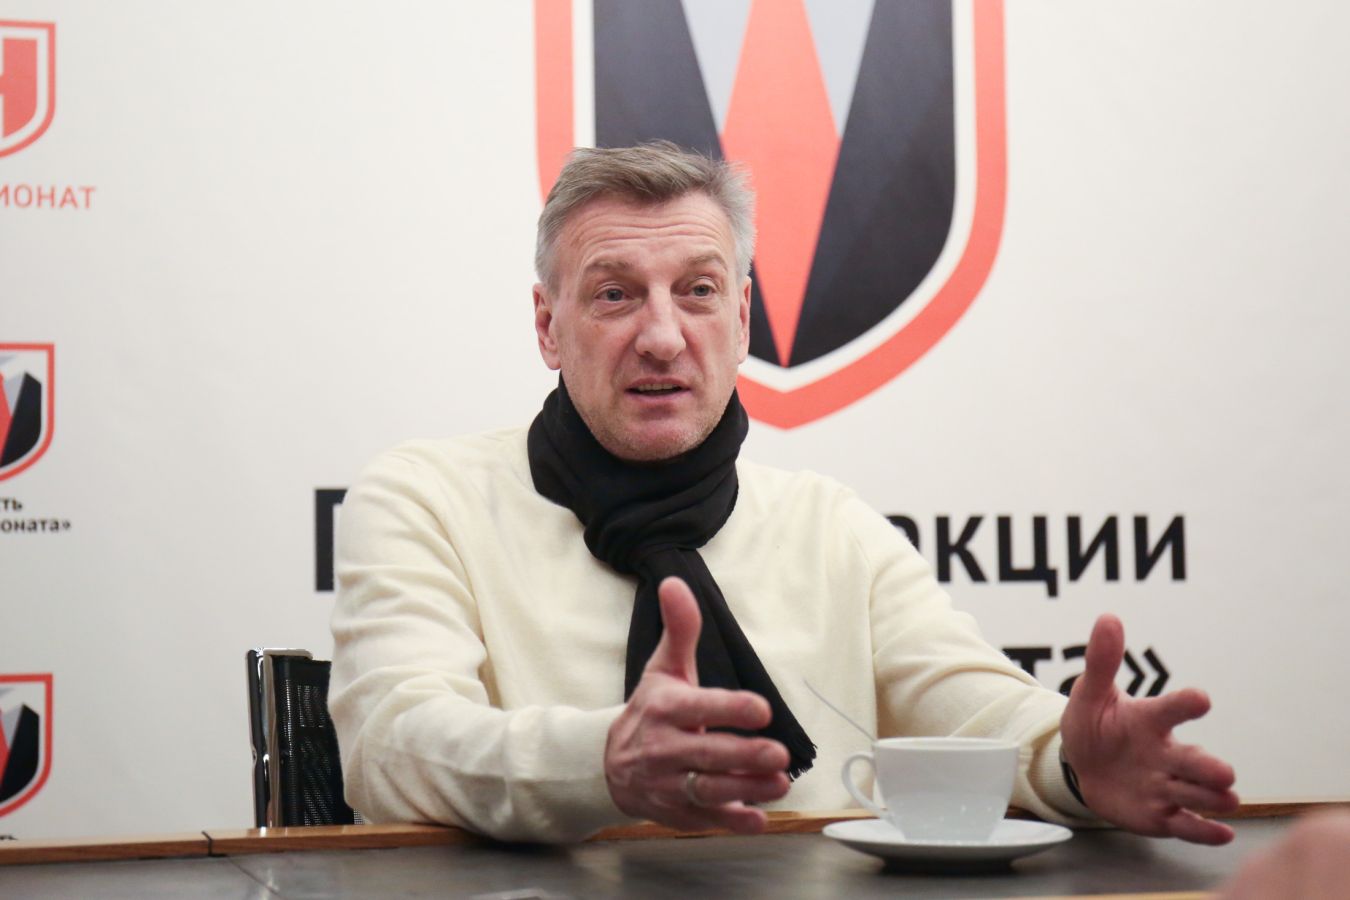 Кузнецов: Дзюба в «Локомотиве» — сомнительное подписание, от которого выиграл только агент